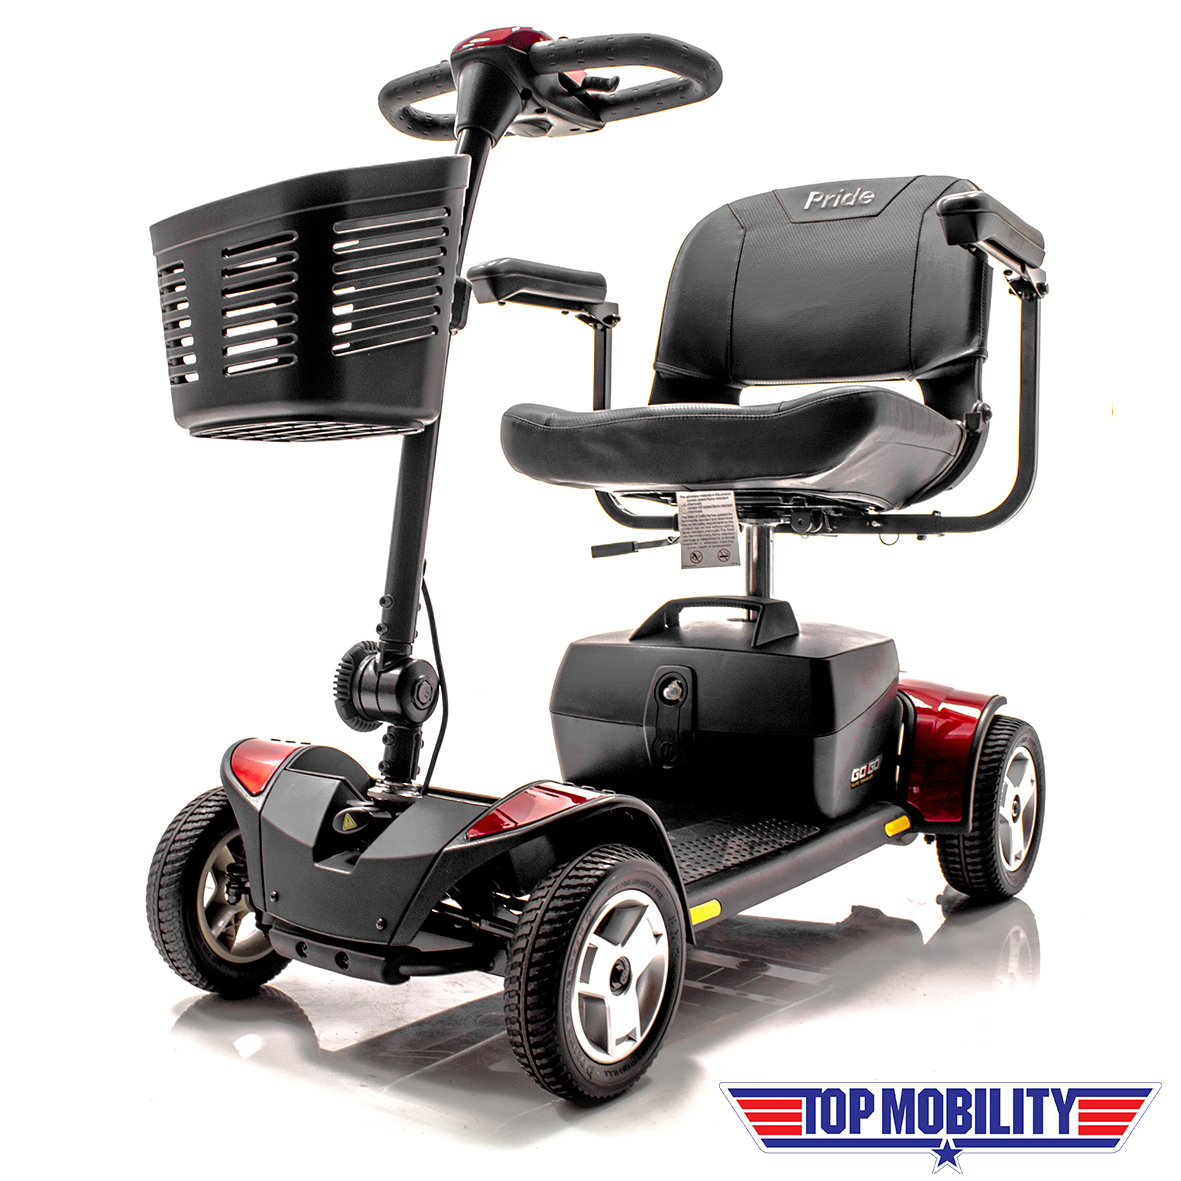 marts kontrol Penelope Go-Go Elite Traveller 4 Wheel Travel Scooter - Top Mobility